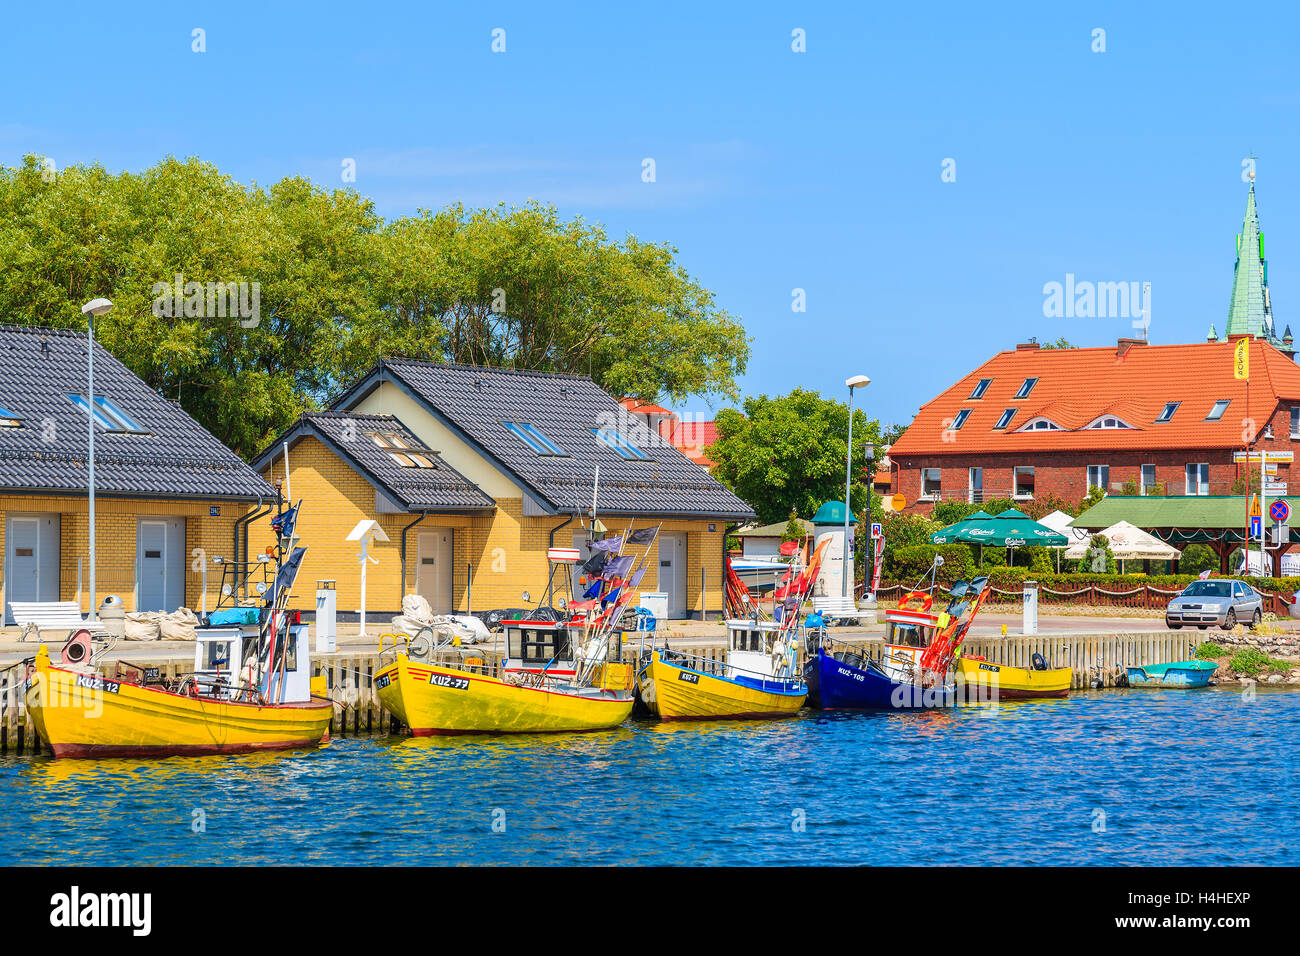 Porta KUZNICA, Polonia - giu 21, 2016: barche da pesca in Kuznica porta sulla penisola di Hel, Mar Baltico, Polonia. La pesca è ancora grande Foto Stock